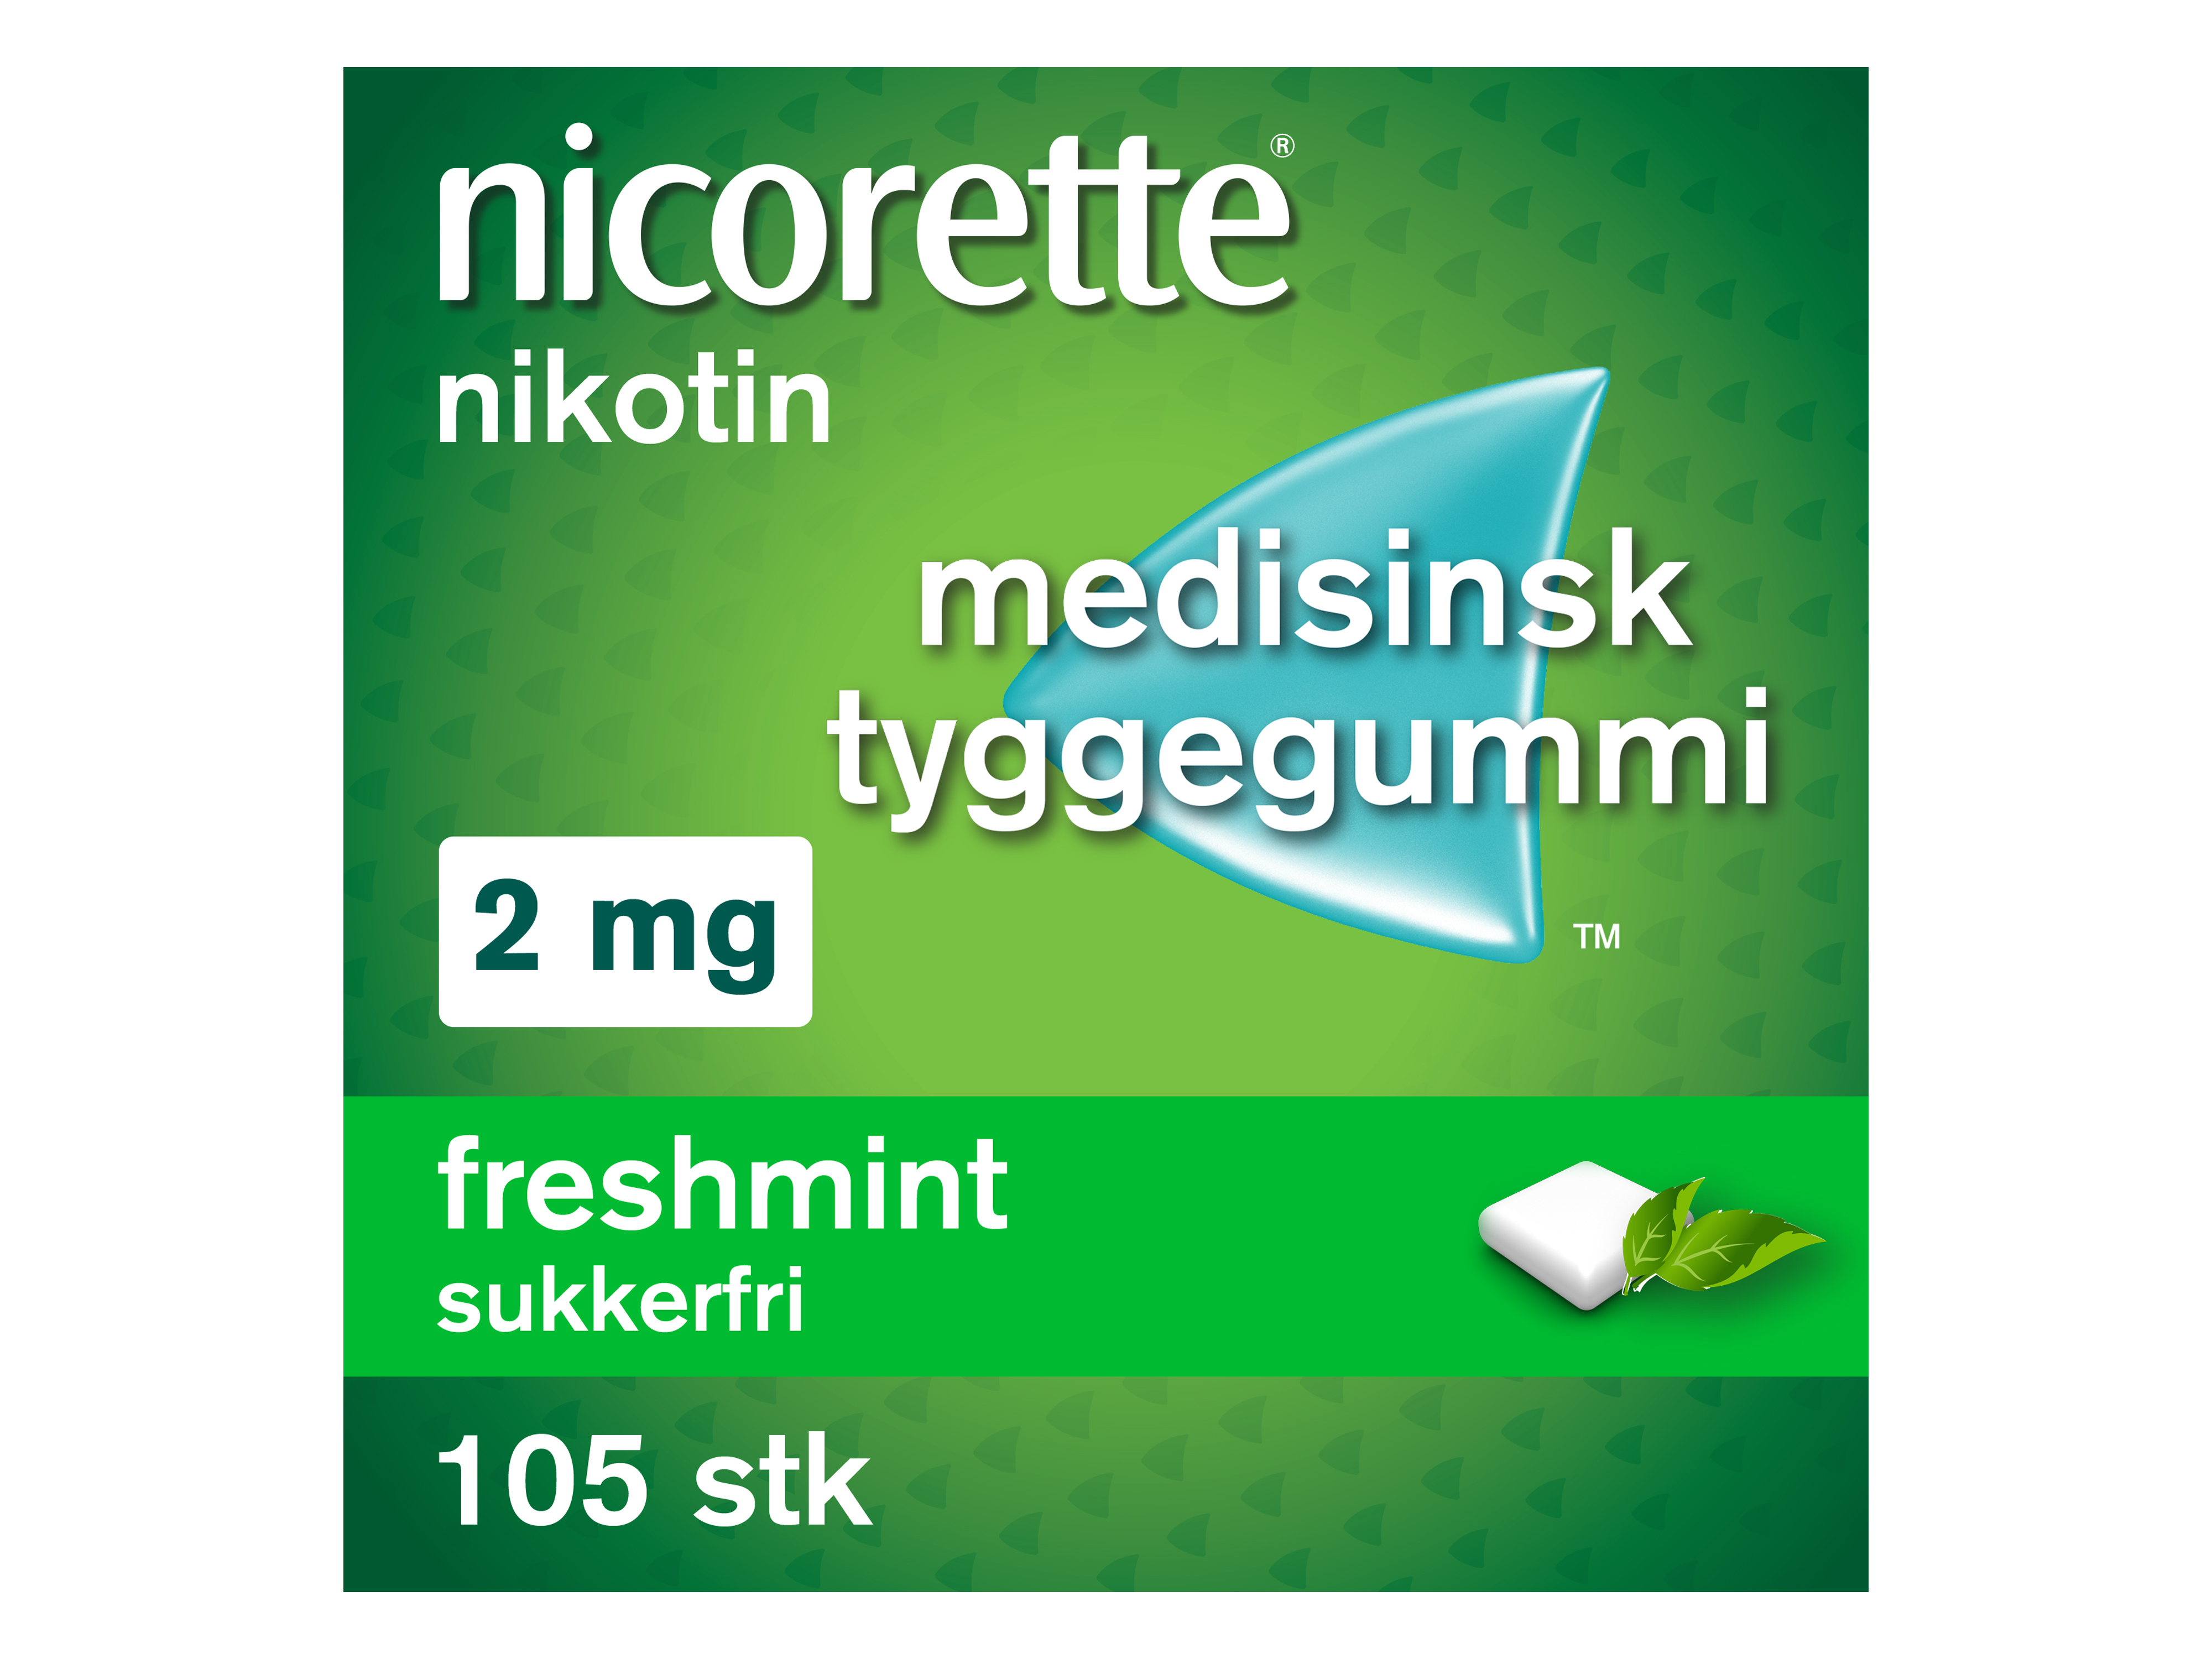 Nicorette Tyggegummi, 2 mg nikotin, Freshmint 105 stk., Slutte å røyke